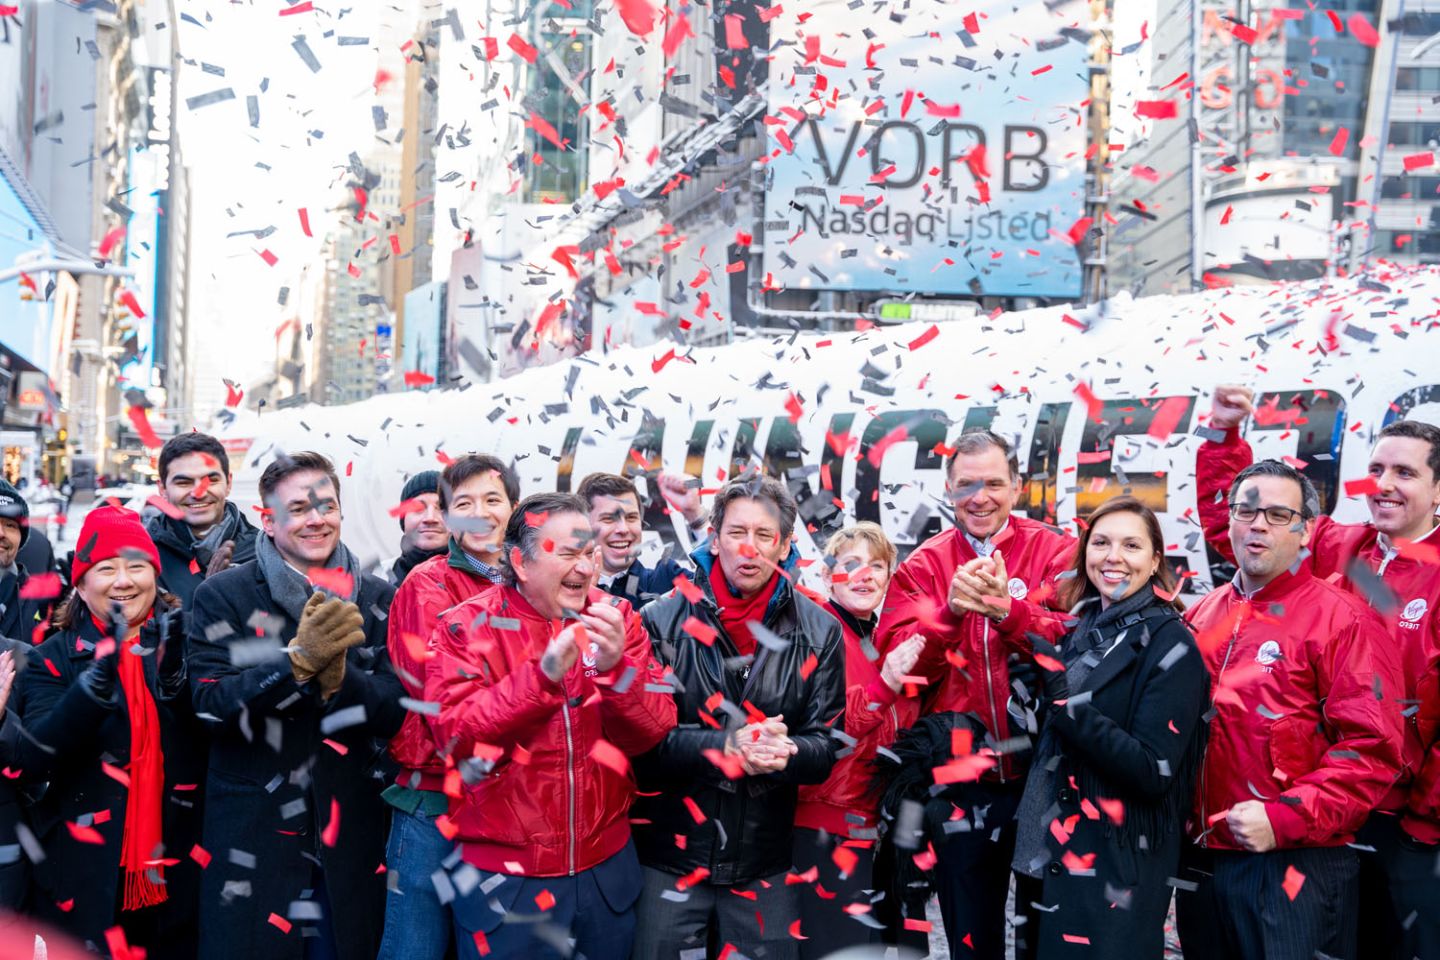 Virgin Orbit team celebrates going public at Nasdaq